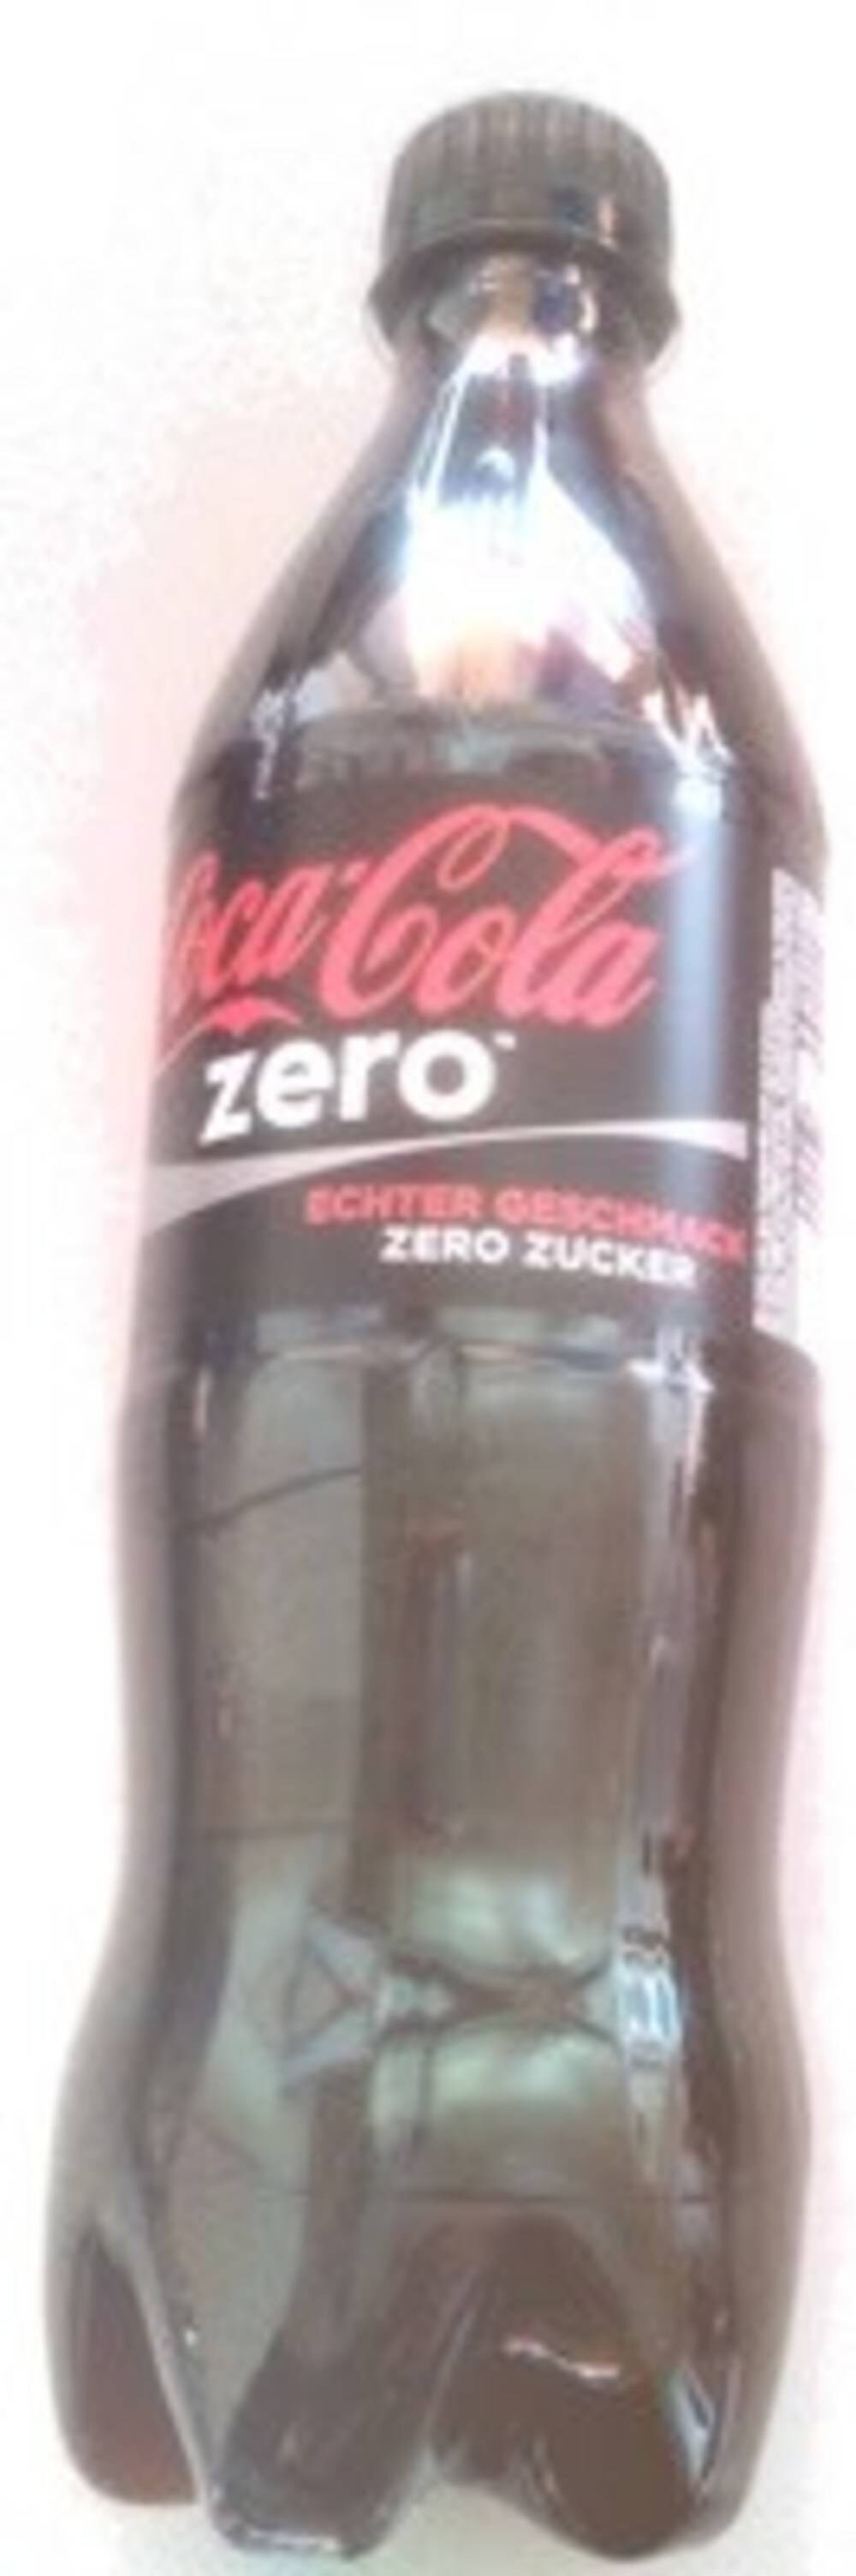 Coca-cola zéro - Product - en